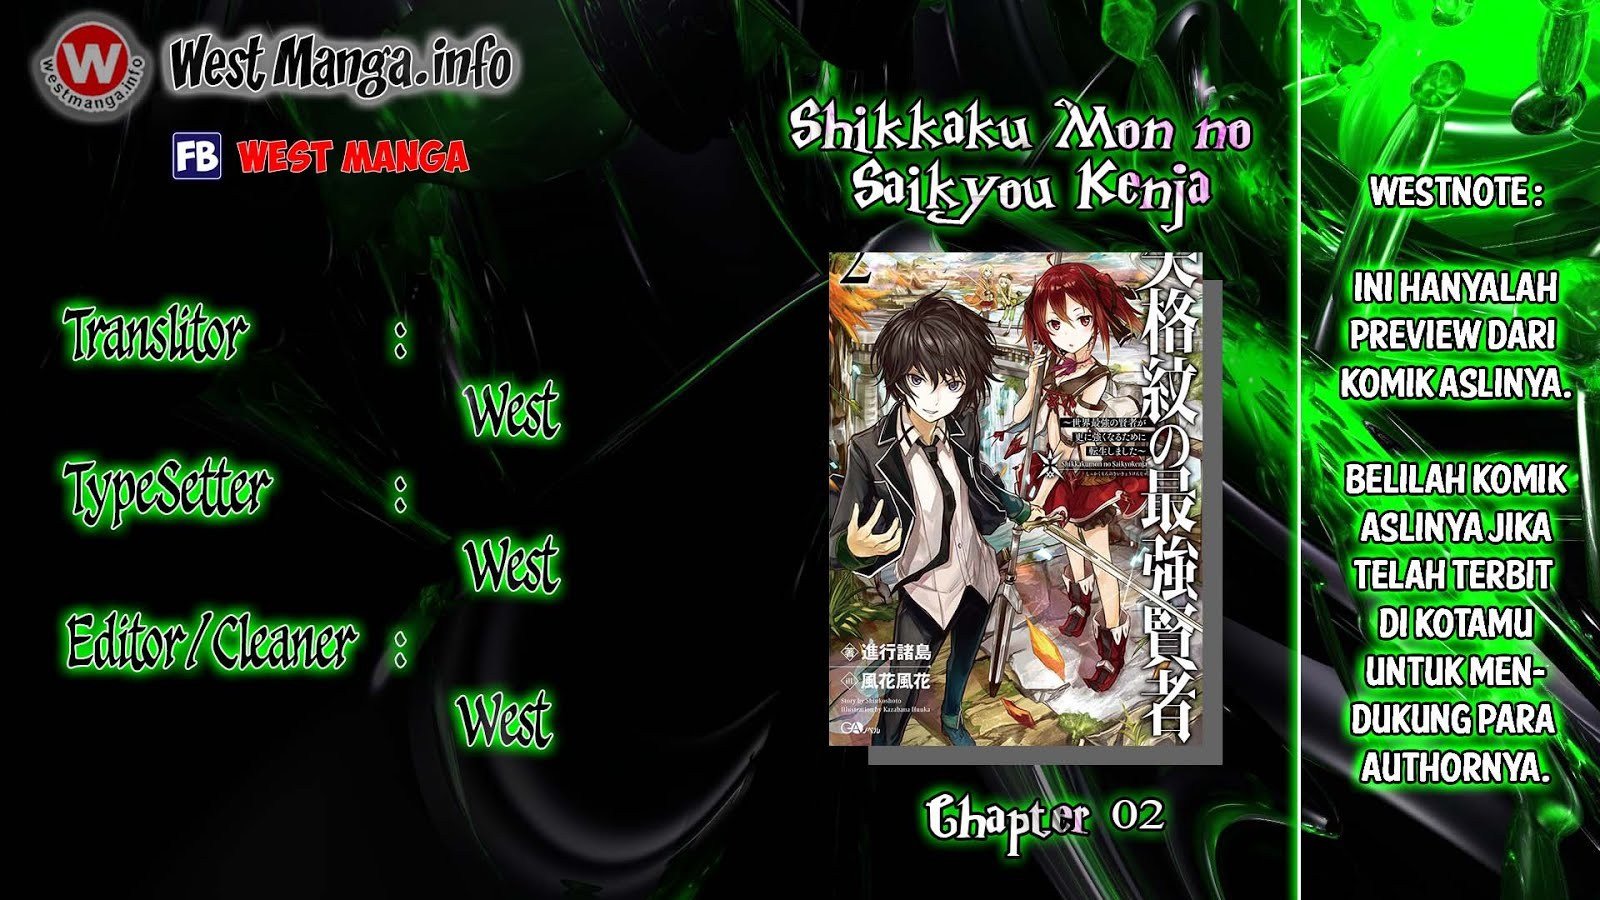 Shikkakumon no Saikyou Kenja Chapter 02